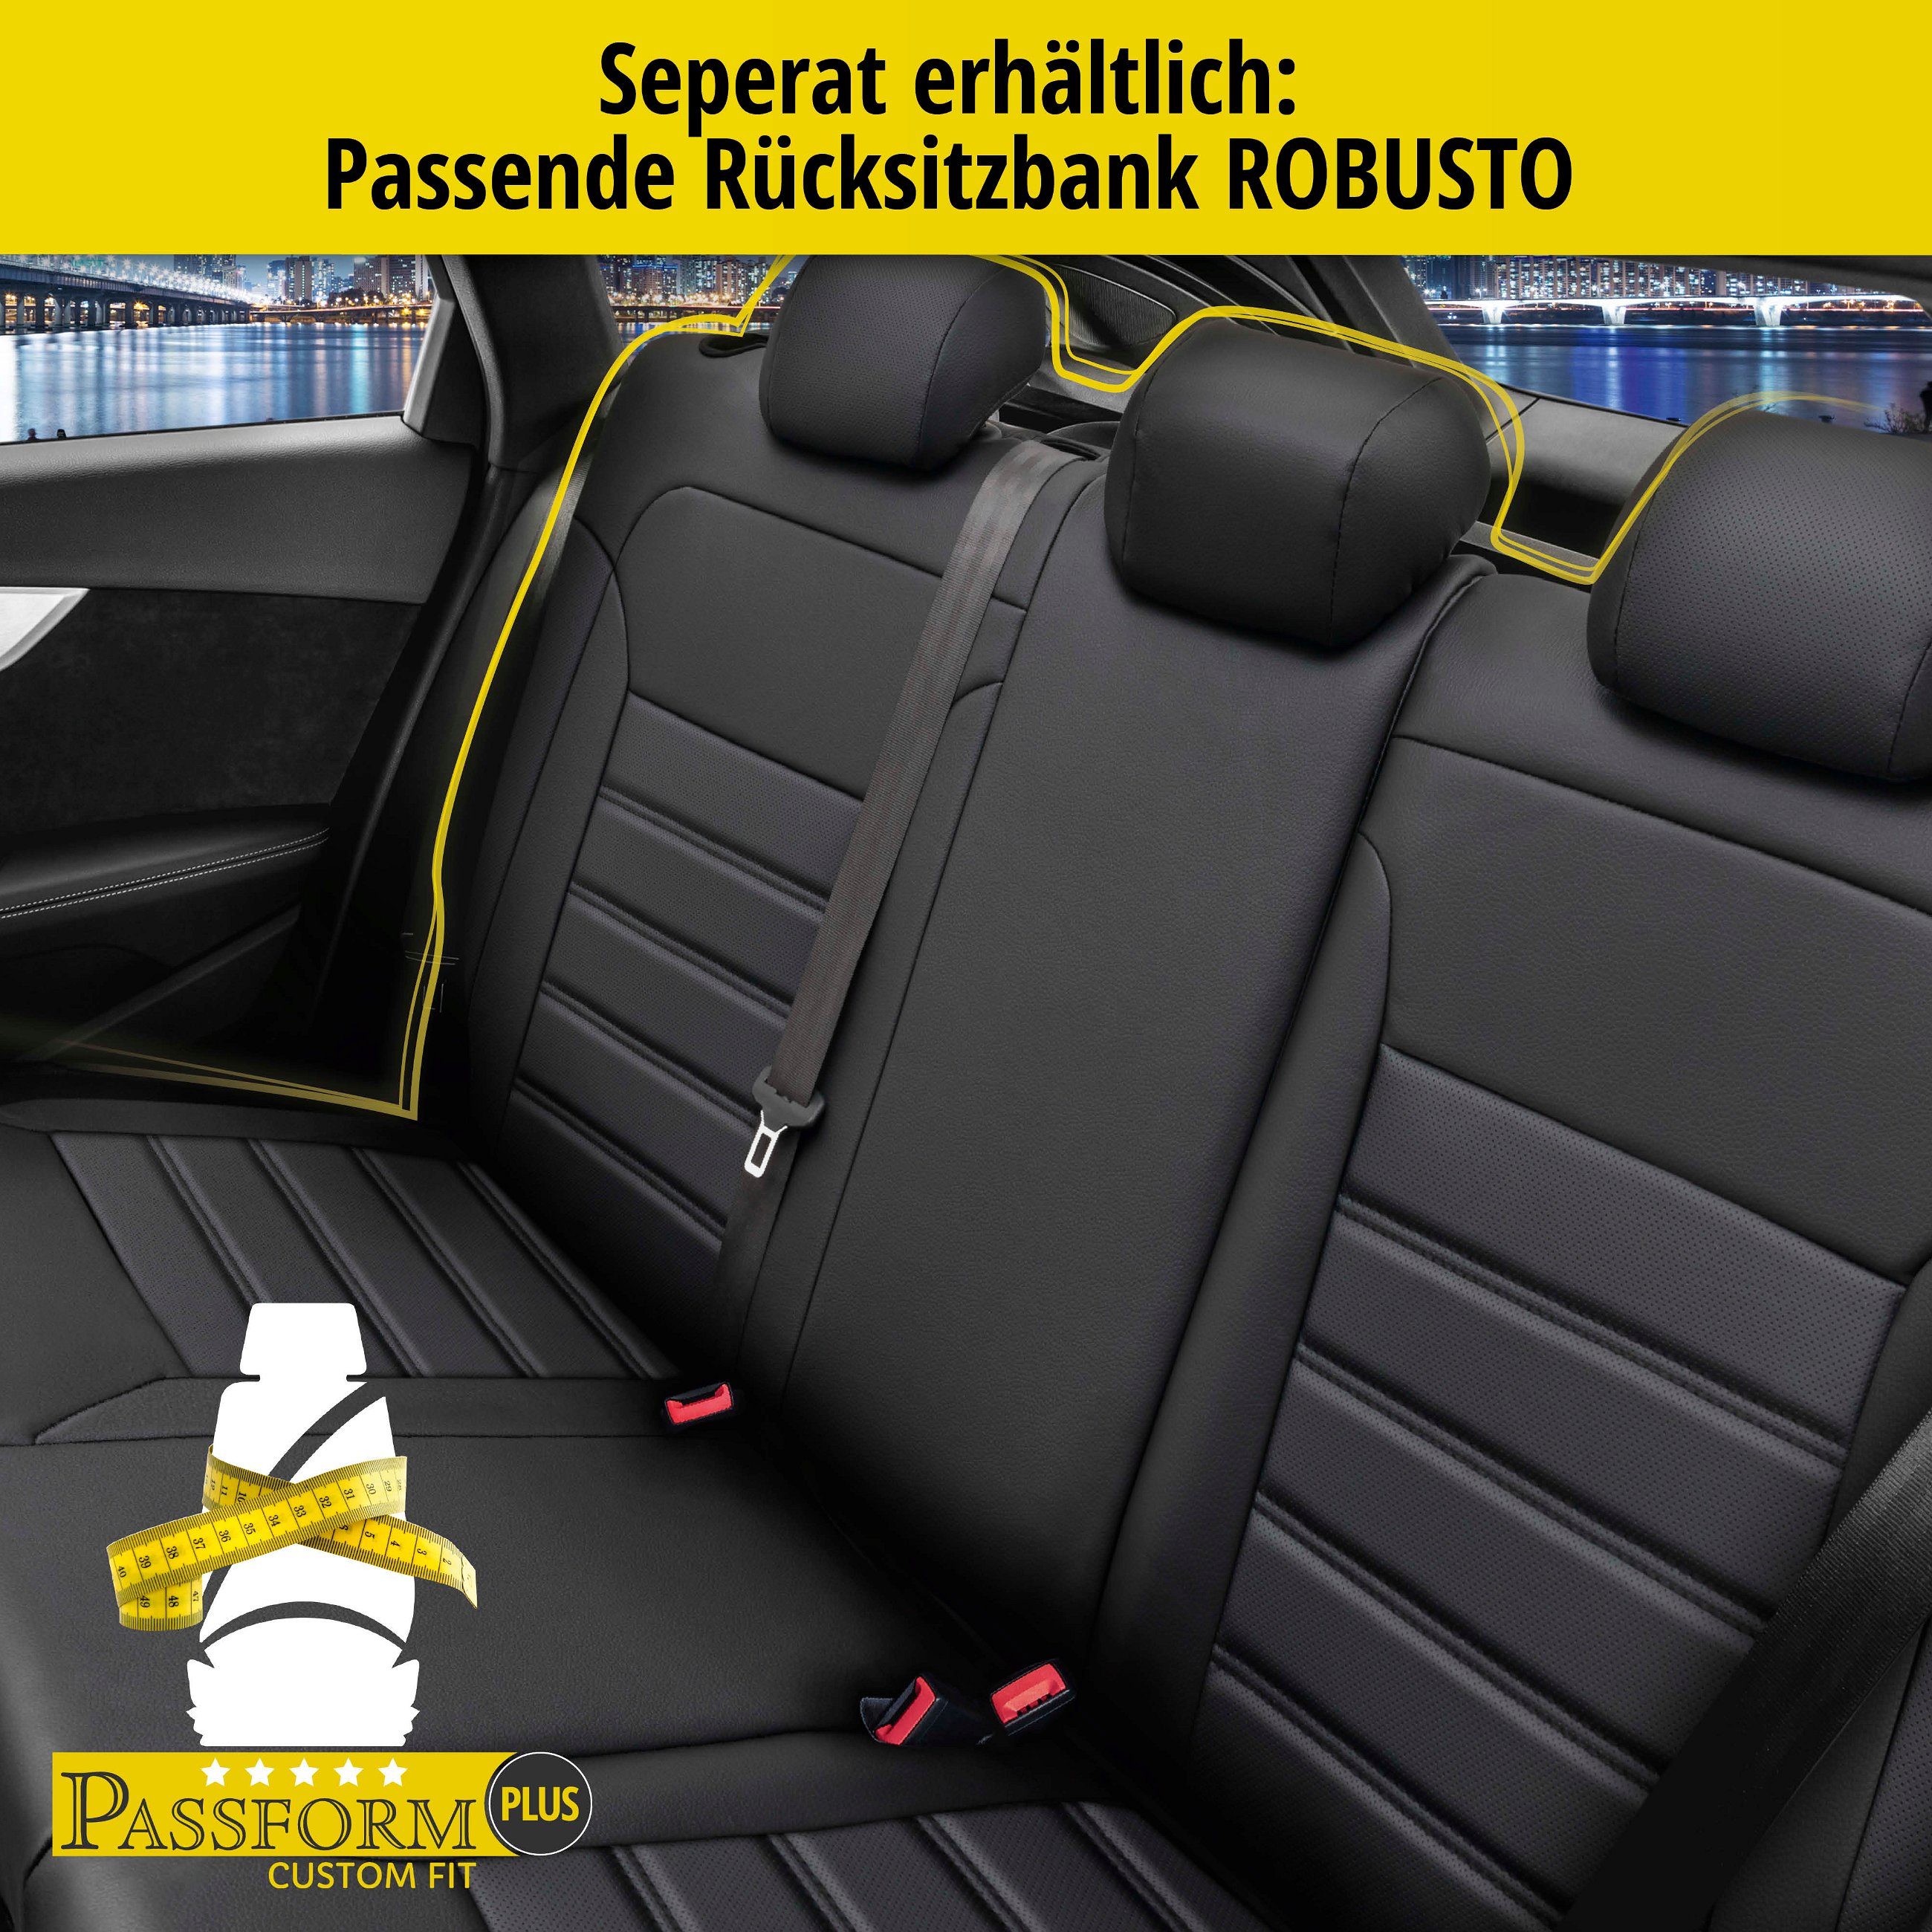 Passform Sitzbezug Robusto für VW Golf 7 Trendline 08/2012-03/2021, 2 Einzelsitzbezüge für Sportsitze